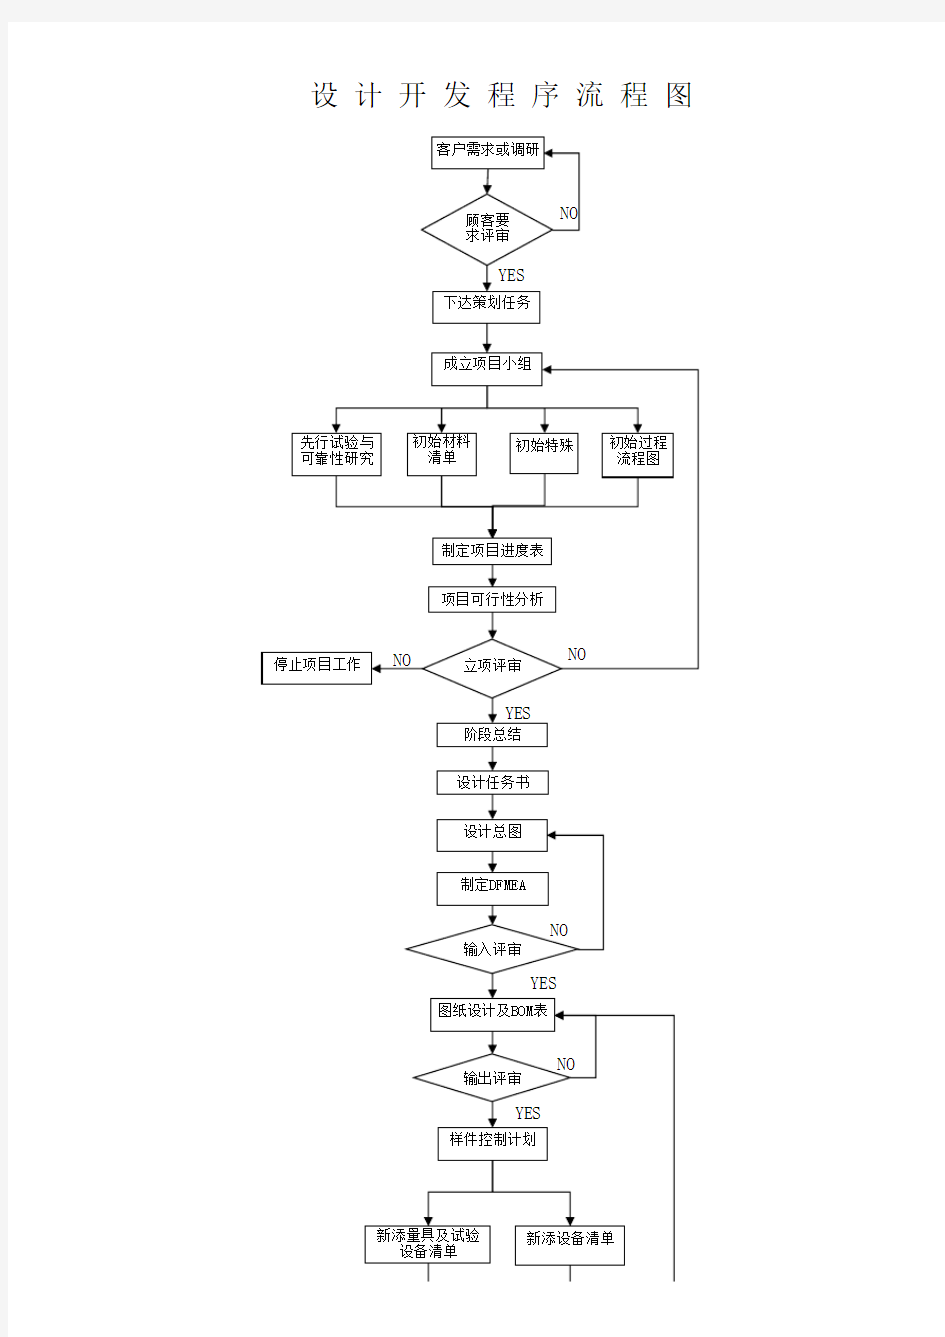 设计开发程序流程图